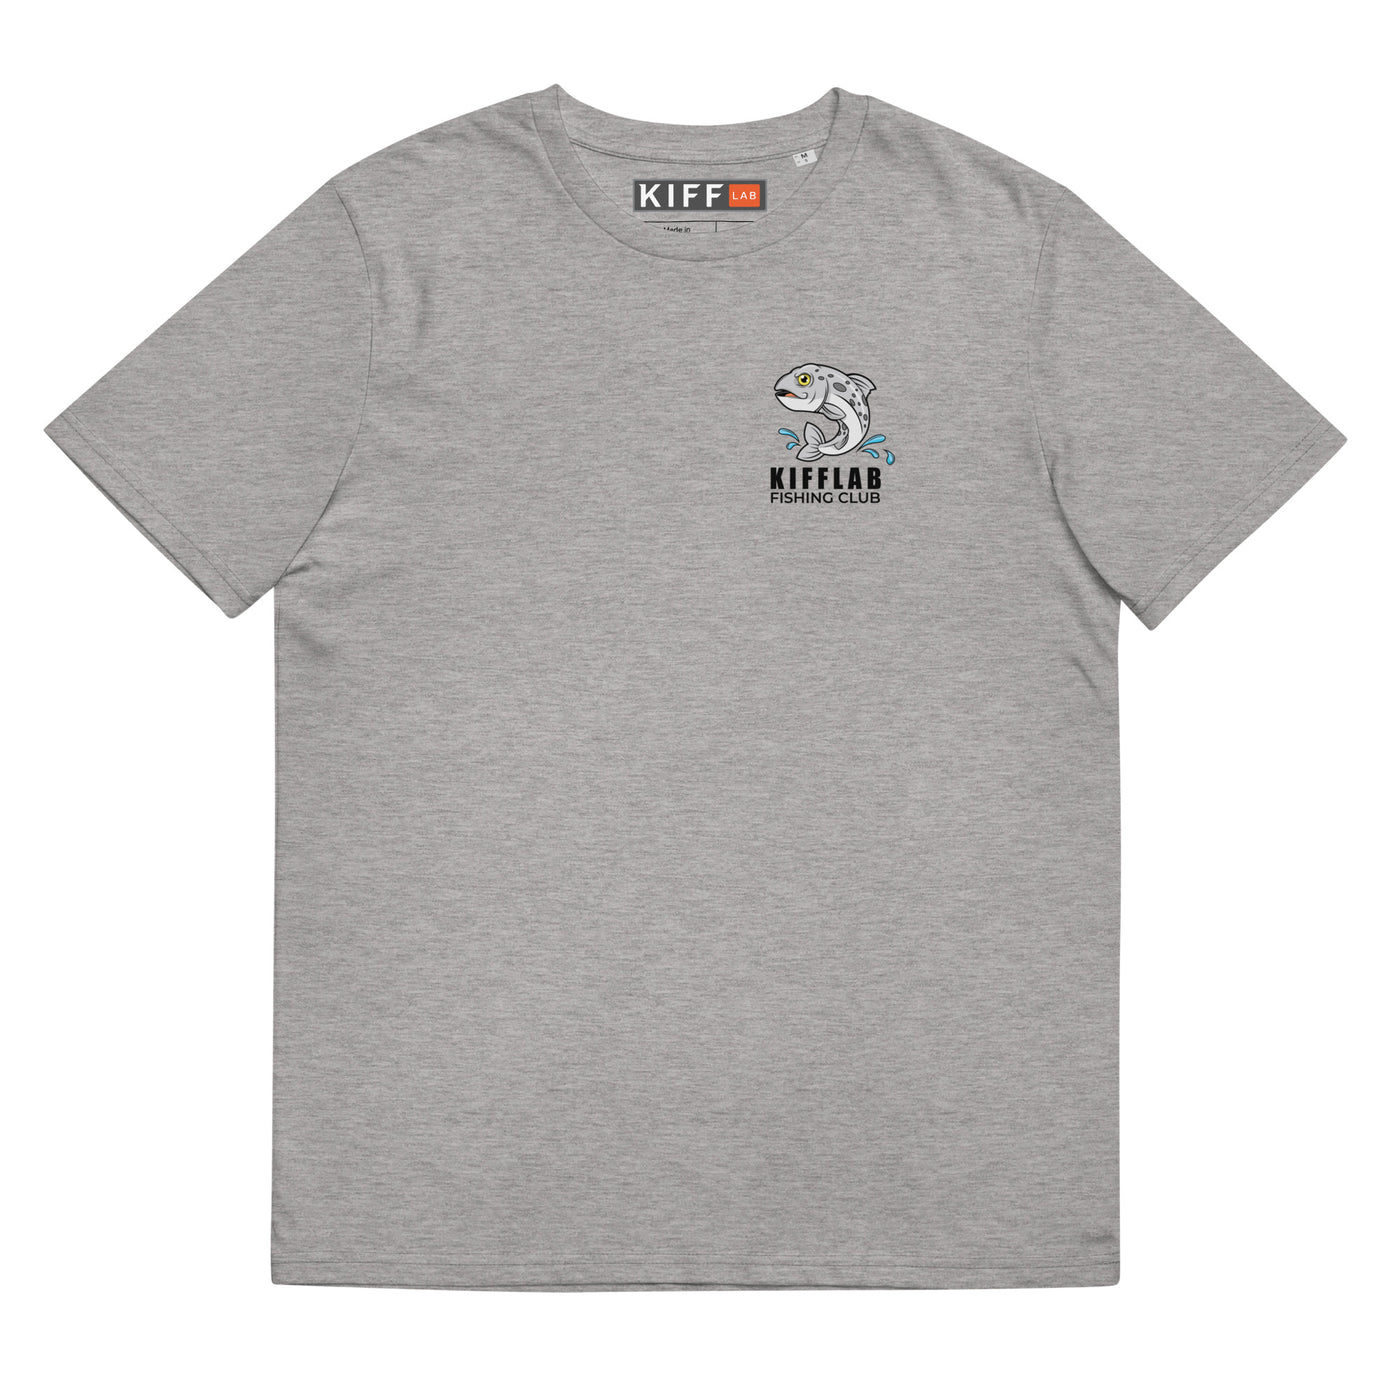 KiffLab Fishing Club Organic Shirt